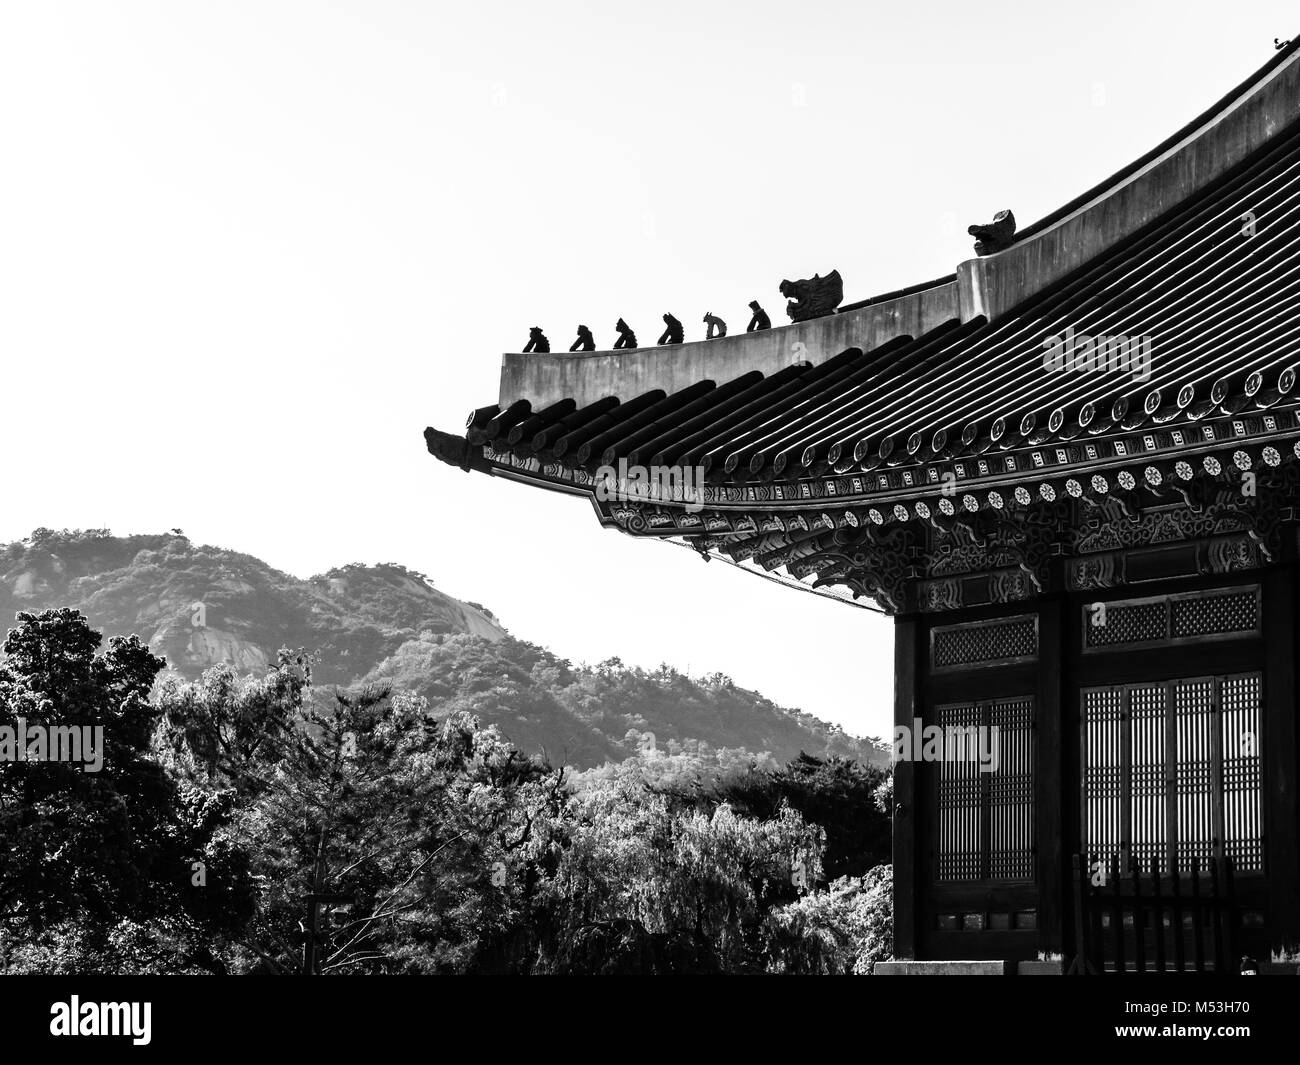 Techo tradicional coreano. Imagen en blanco y negro. El Palacio Gyeongbokgung. Seúl, Corea del Sur Foto de stock